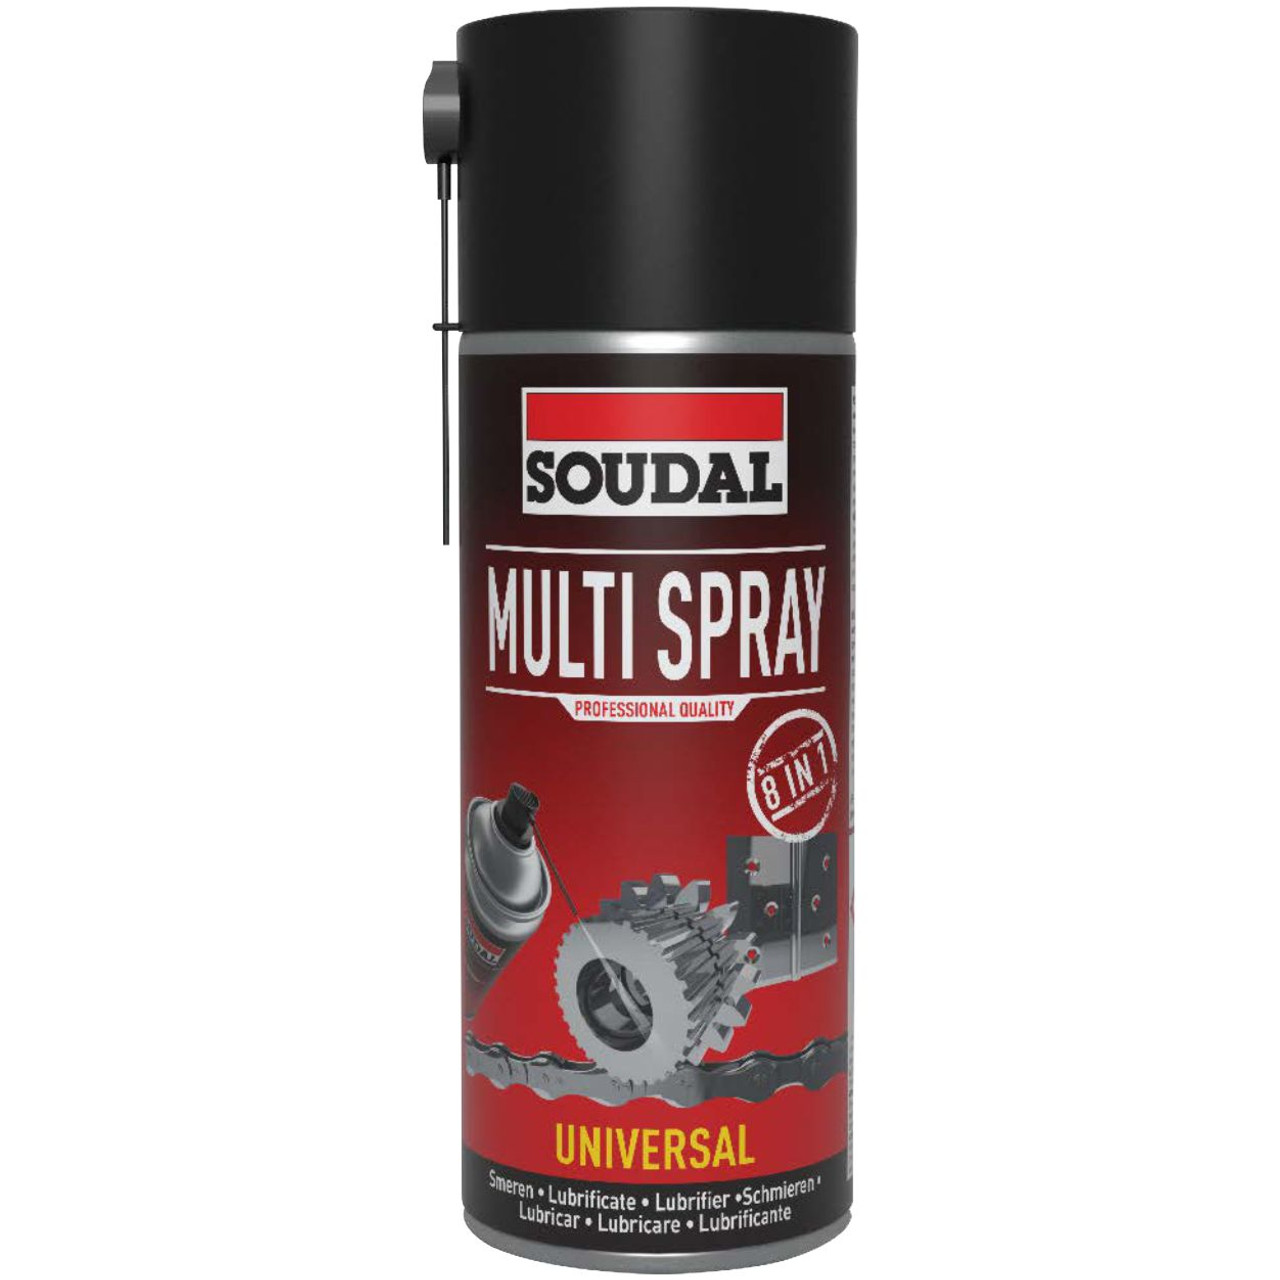 Multi Spray - 8 In 1 400Ml